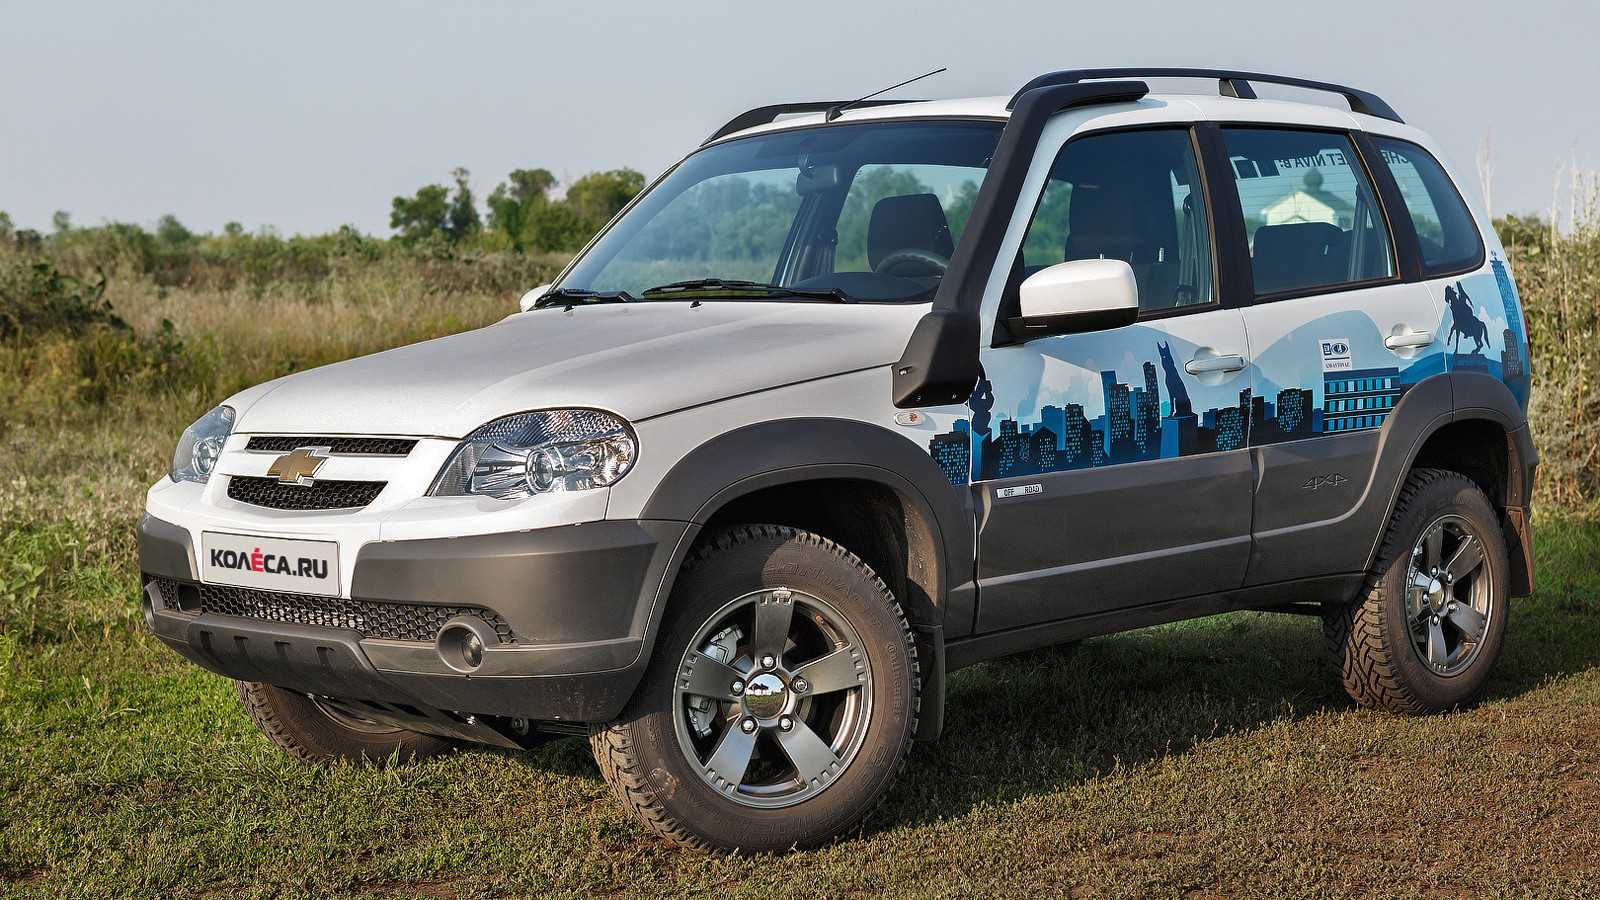 СП GM-АвтоВАЗ наконец-то приступило к серийному производству внедорожников Chevrolet Niva с антиблокировочной системой тормозов и подушками безопасности